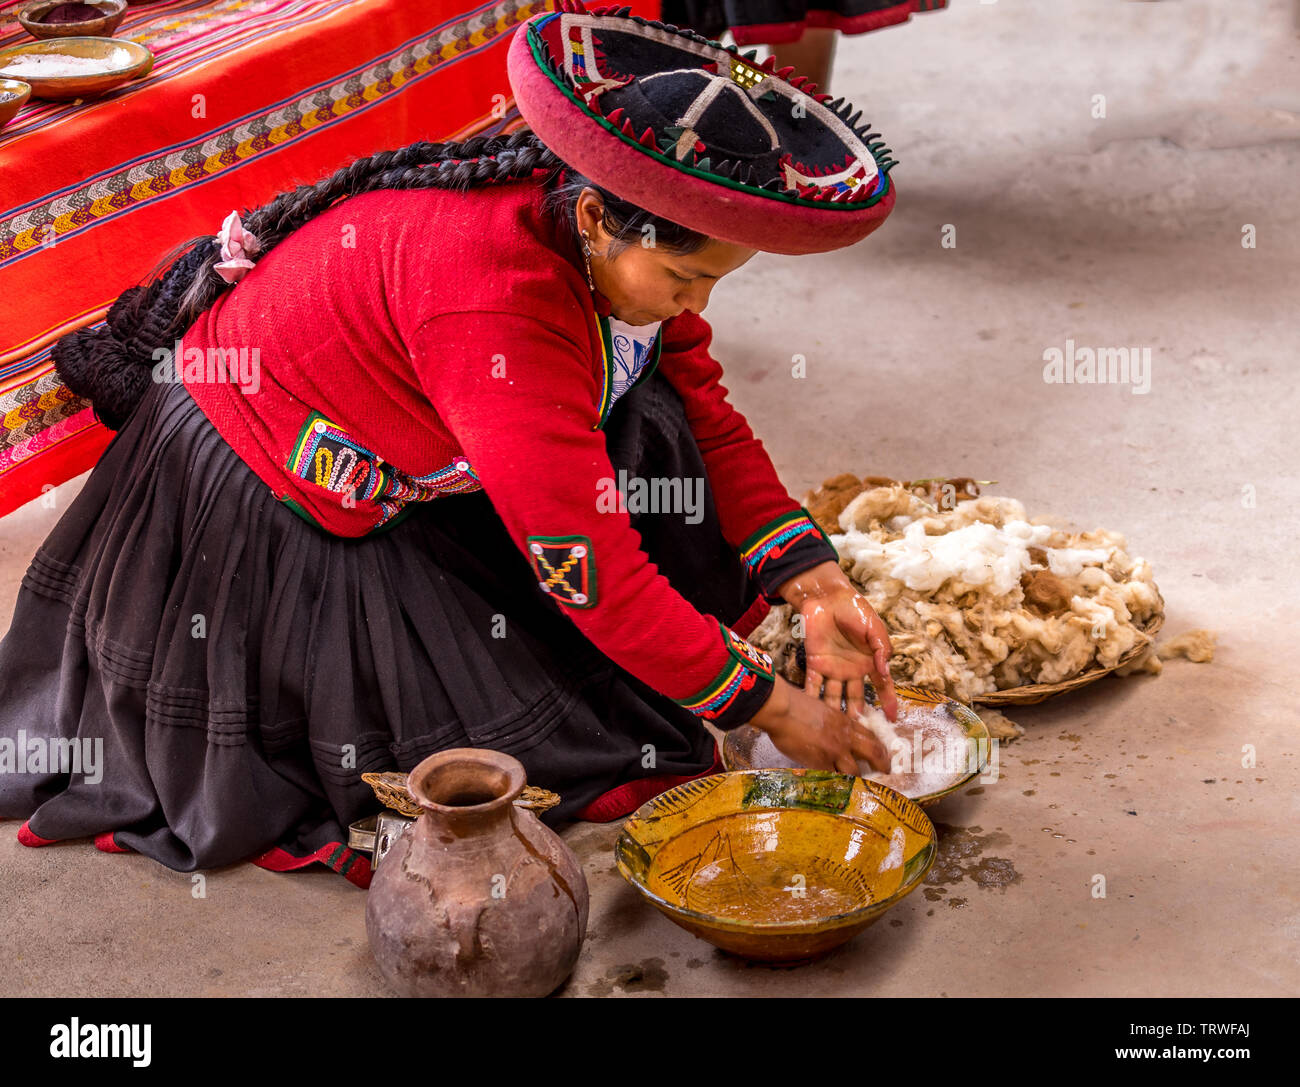 Cuzco, Perù - Aprile 30, 2019. Donna Peruviana demorstration dell antica tradizione andina di rendere i tessuti dalle tinte naturalmente hadwoven lana di alpaca Foto Stock